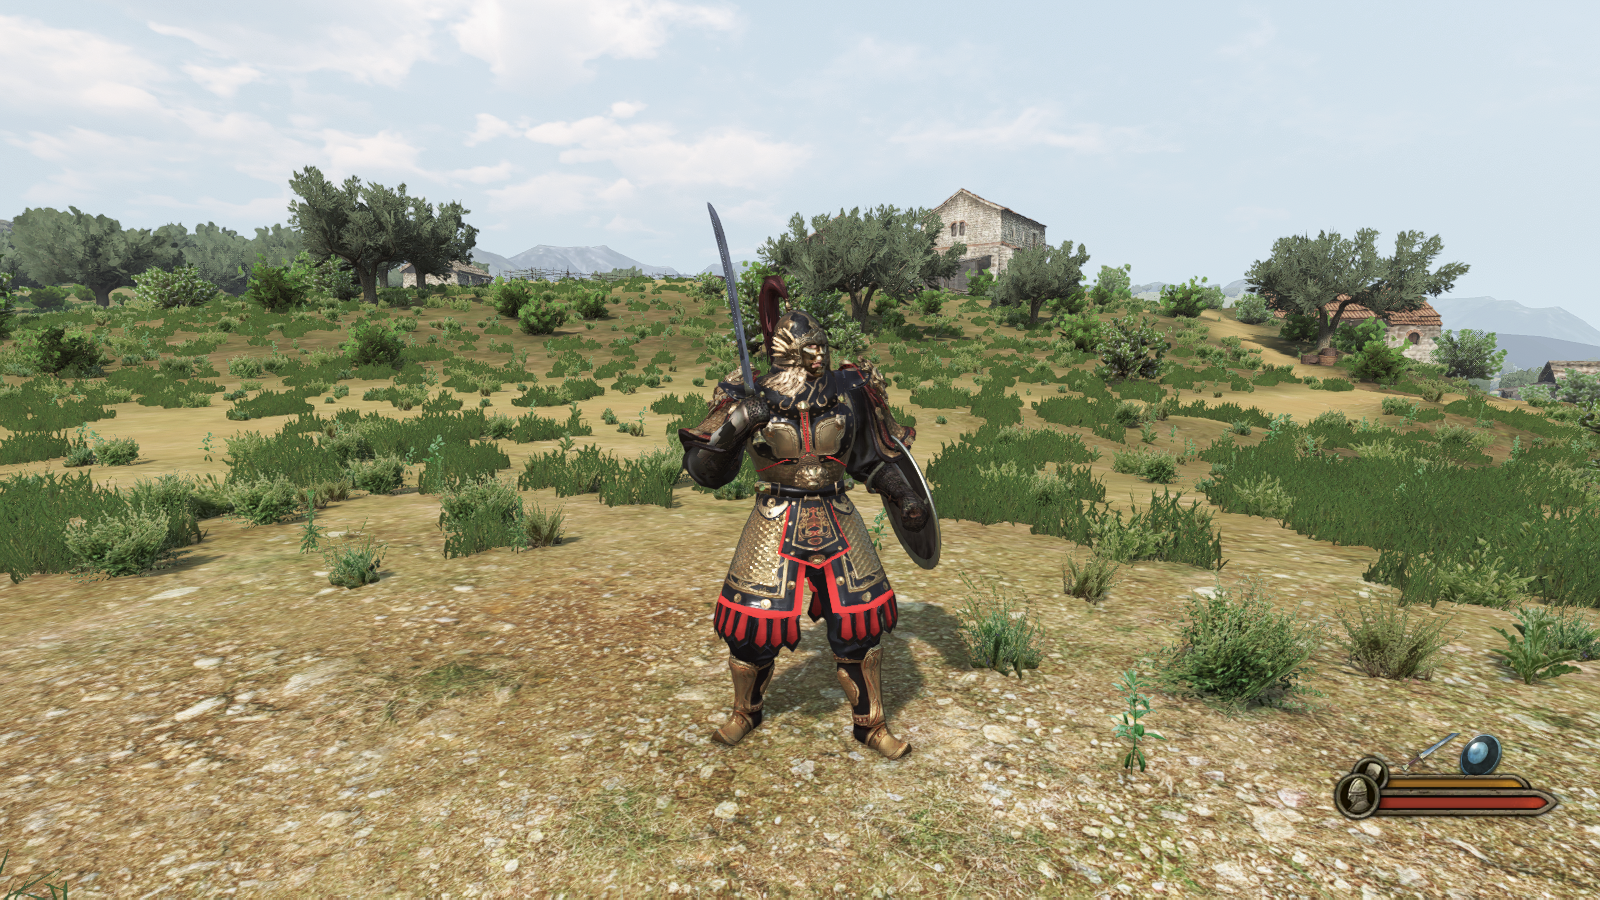 《骑马与砍杀2》的中国风格甲胄Mod，在很多游戏中都可以看到有着中国古代风格甲胄的mod作品